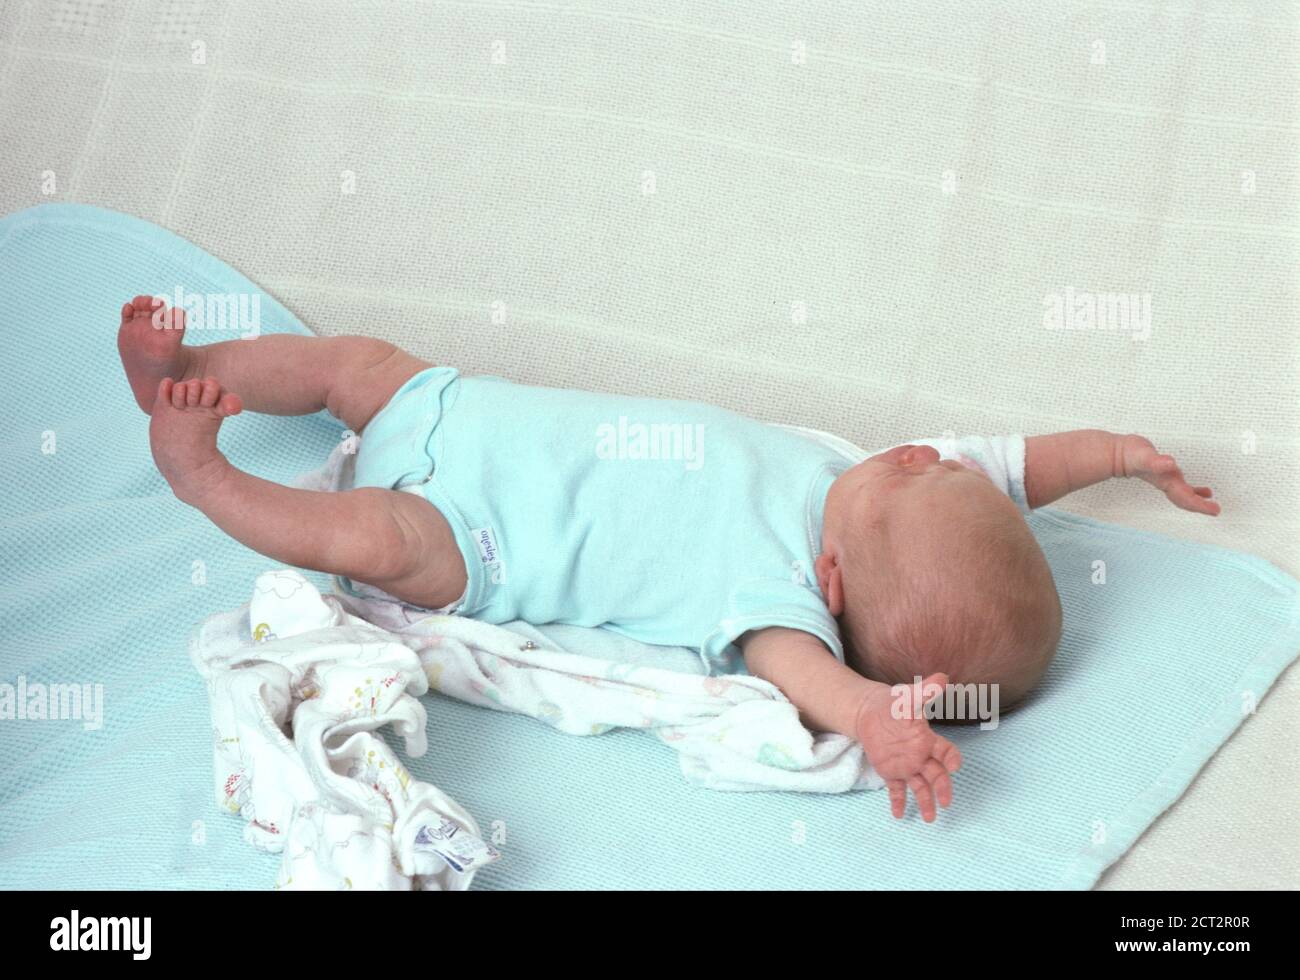 Nouveau-né bébé fille, 3 semaines, sur le dos, pleine longueur, réflexe:  L'amidé (Moro reflex Photo Stock - Alamy